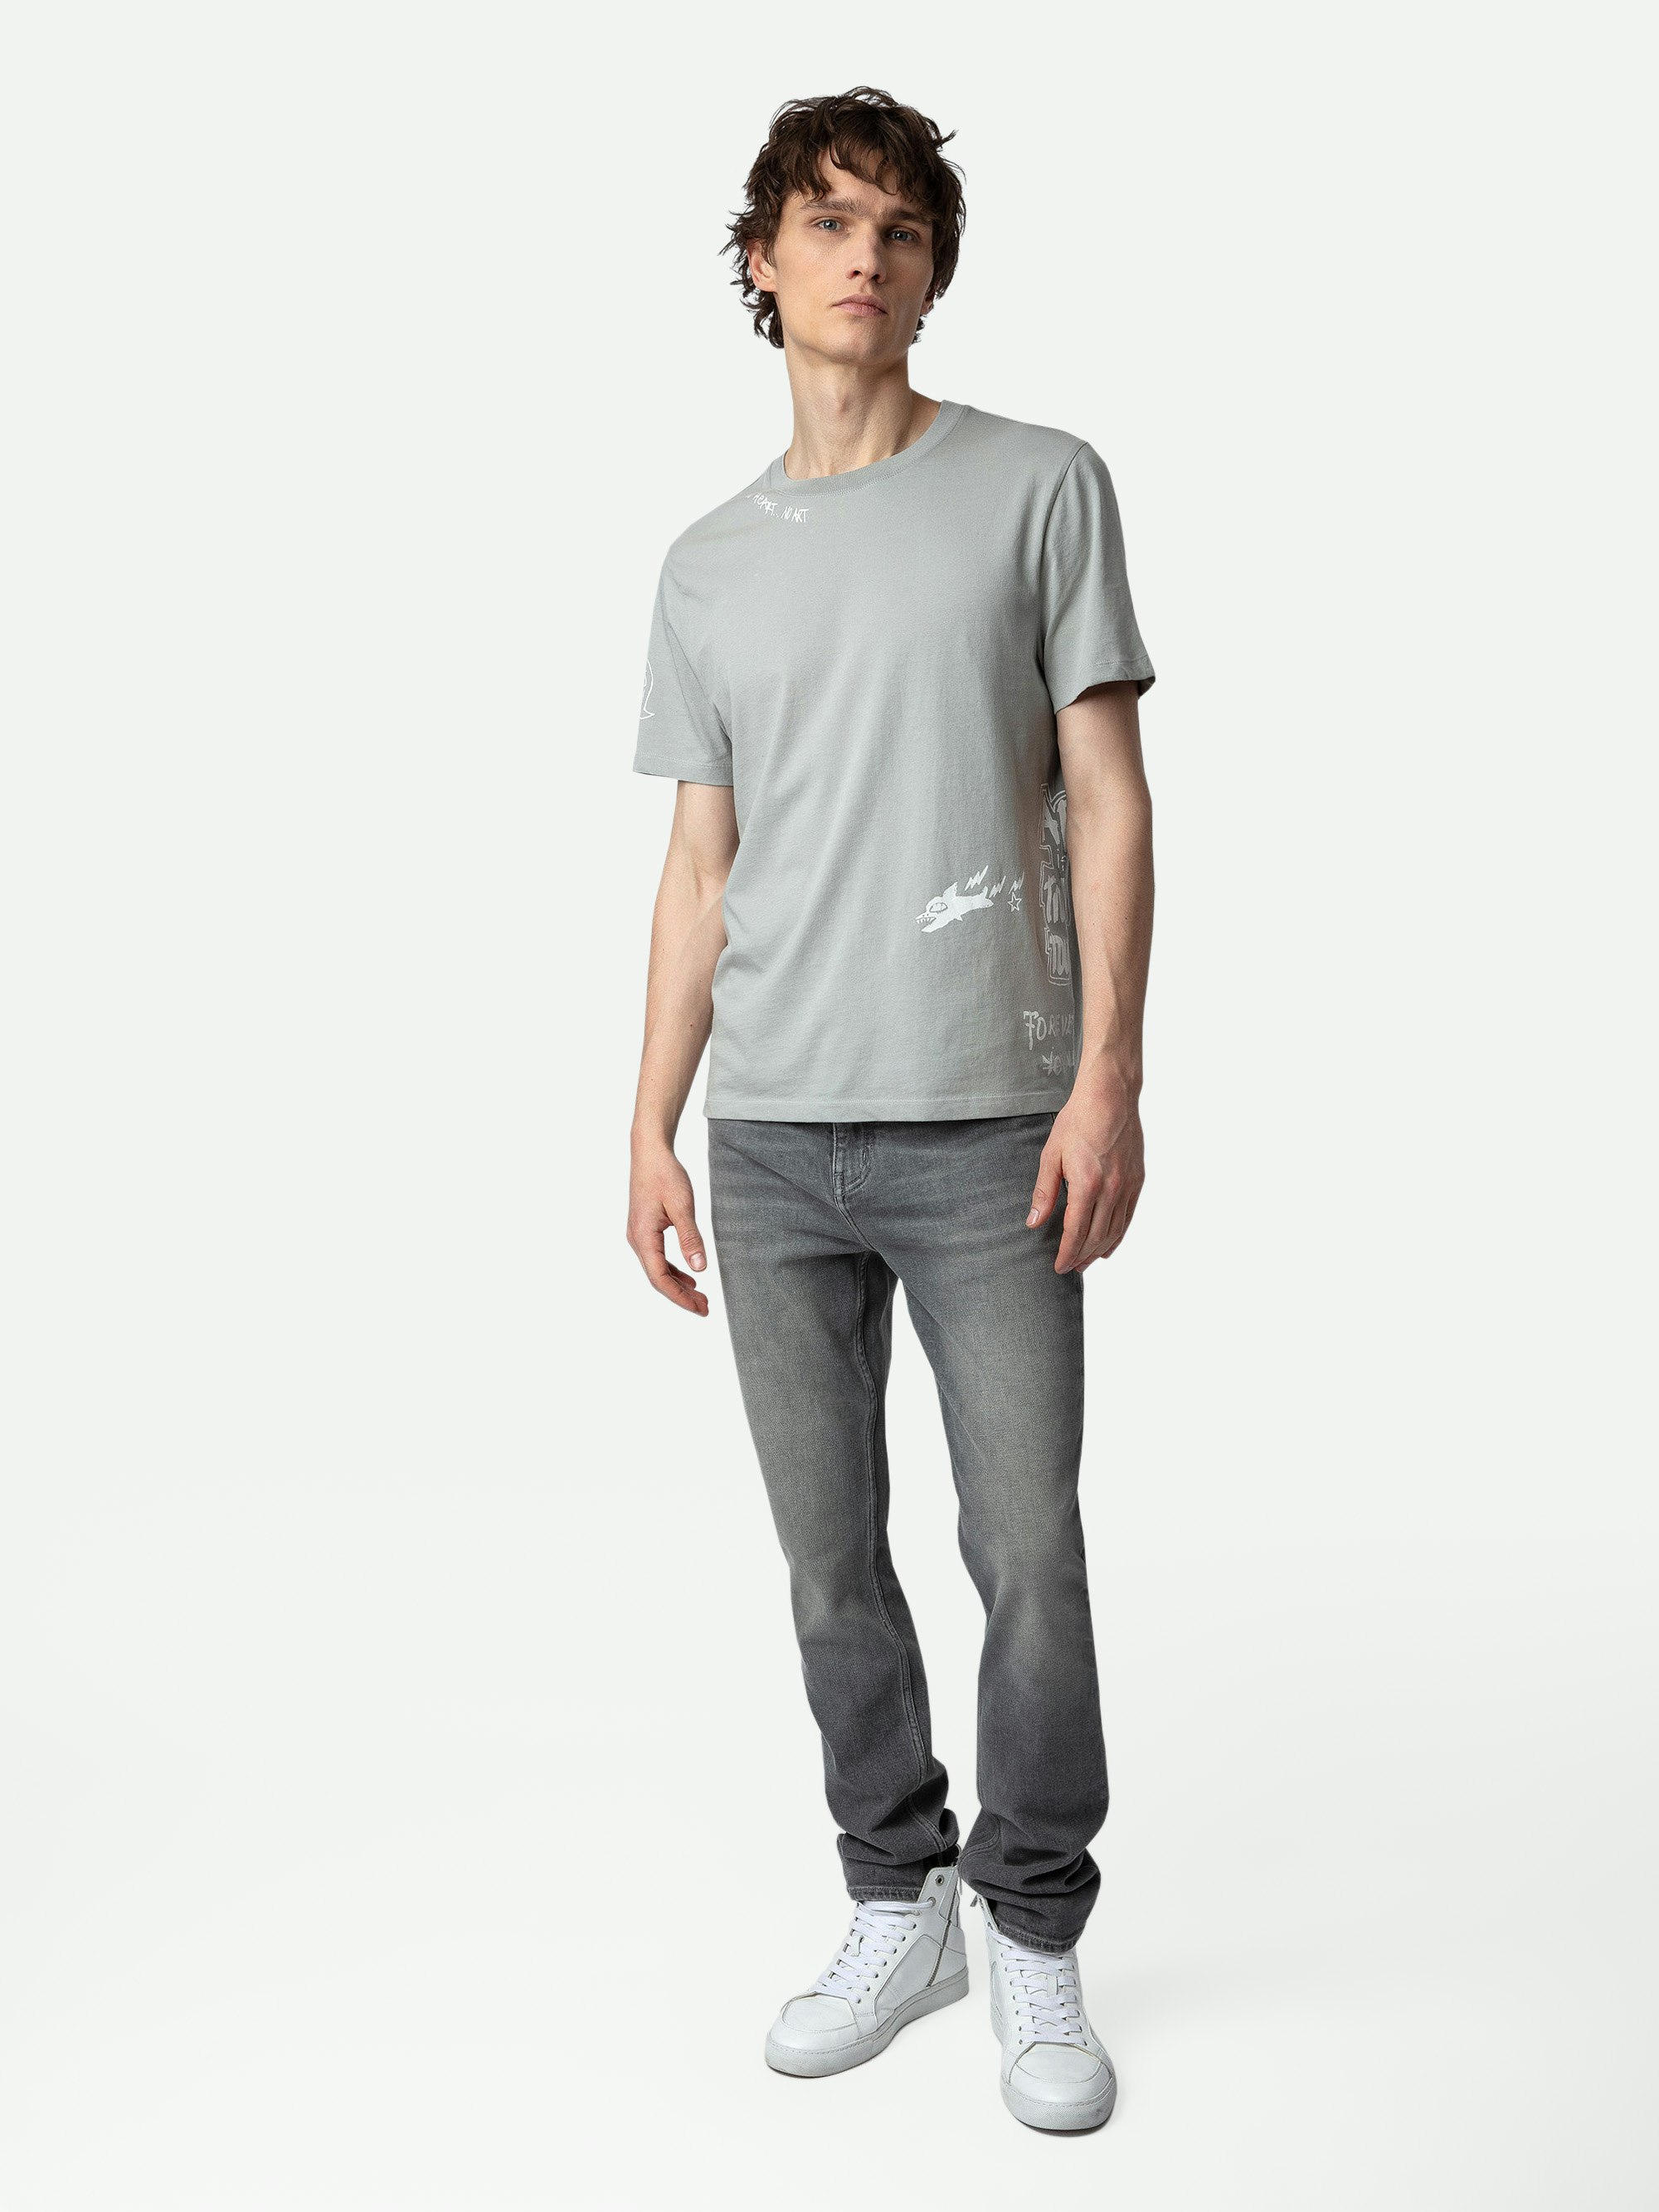 T-shirt Ted Tag - T-shirt en coton biologique gris orné de customisations créées par Humberto Cruz.